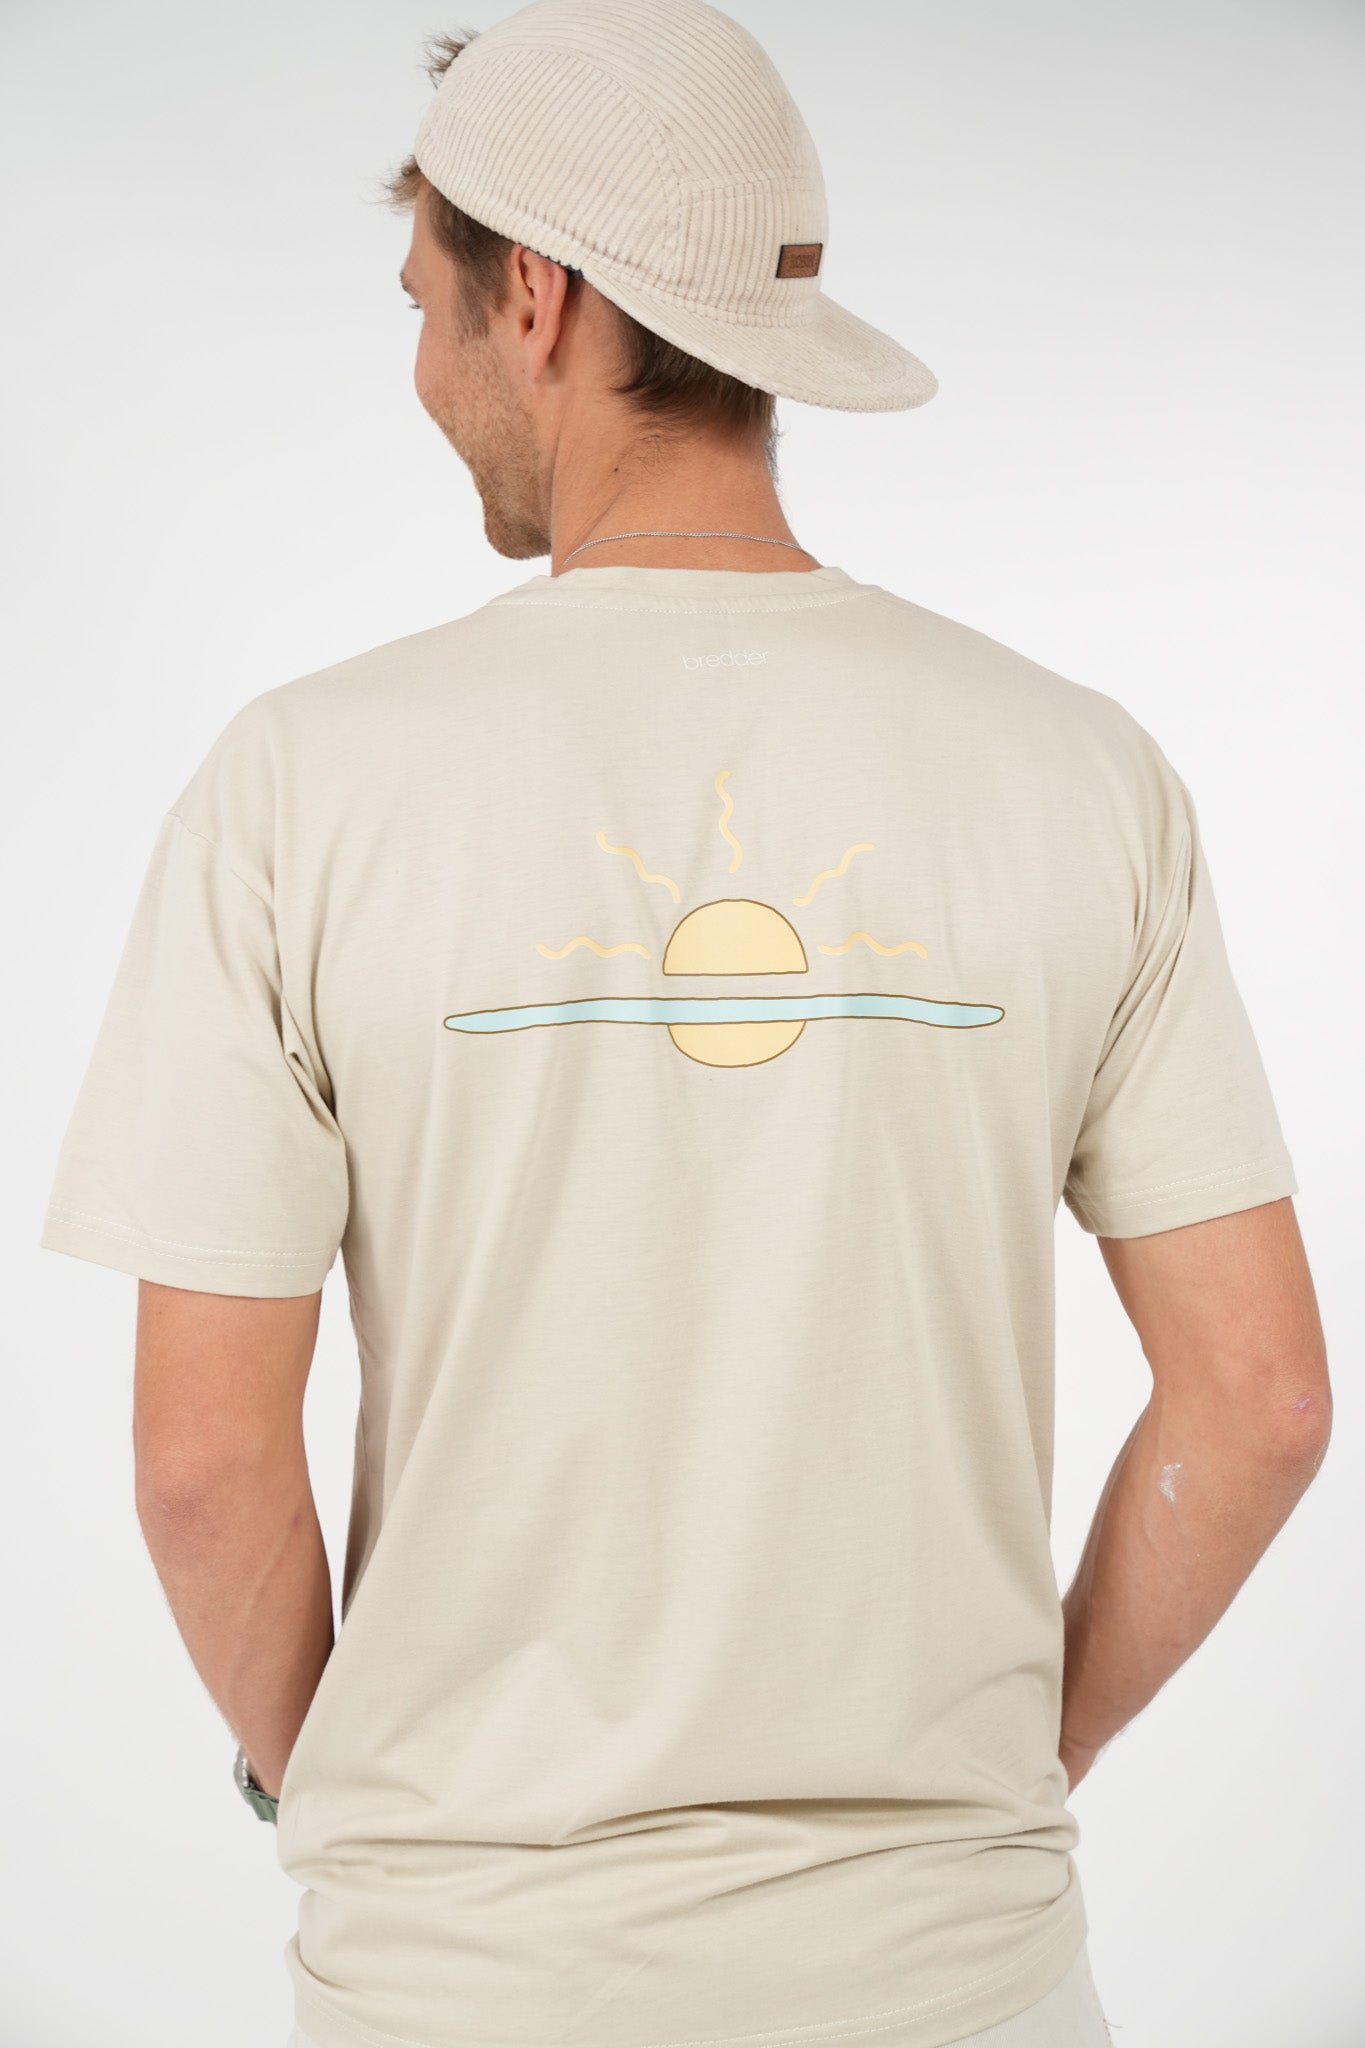 Bredder Sunset Shirt